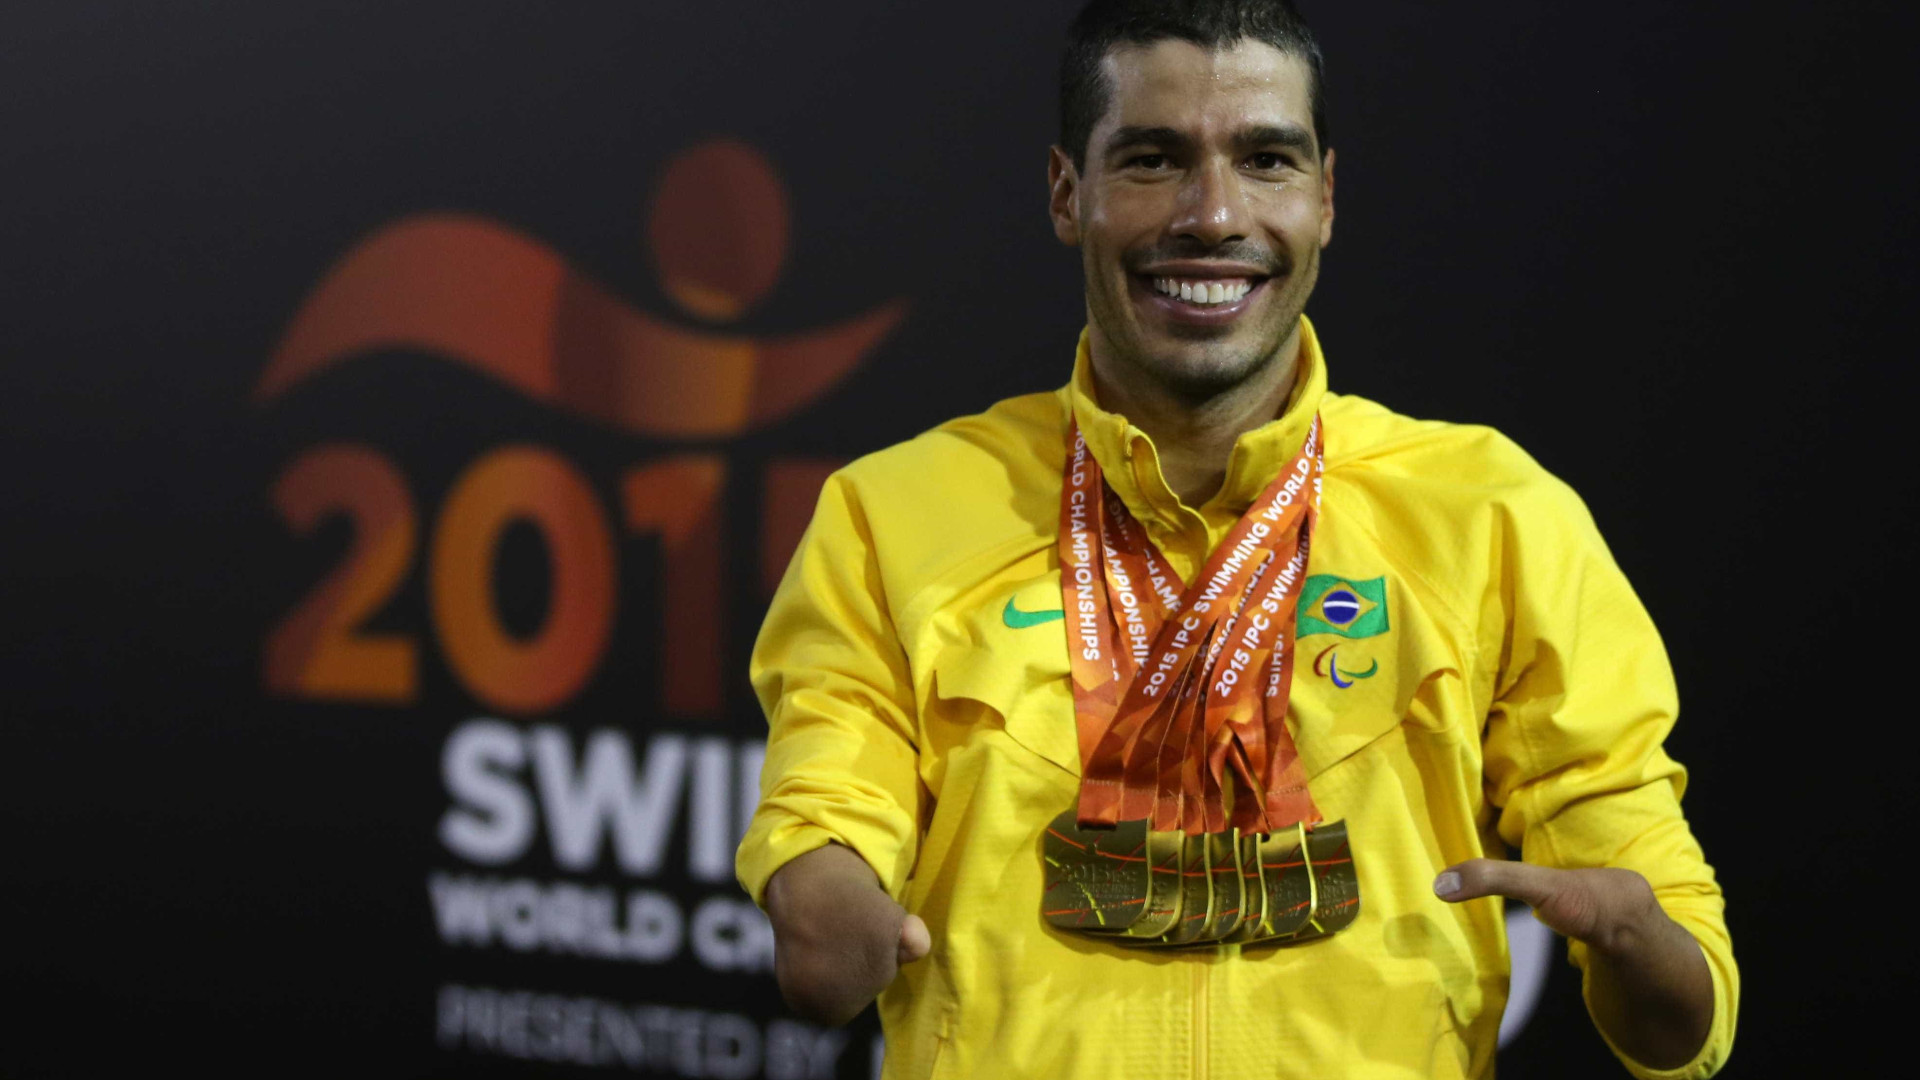 Conheça Daniel Dias, o maior medalhista paralímpico brasileiro